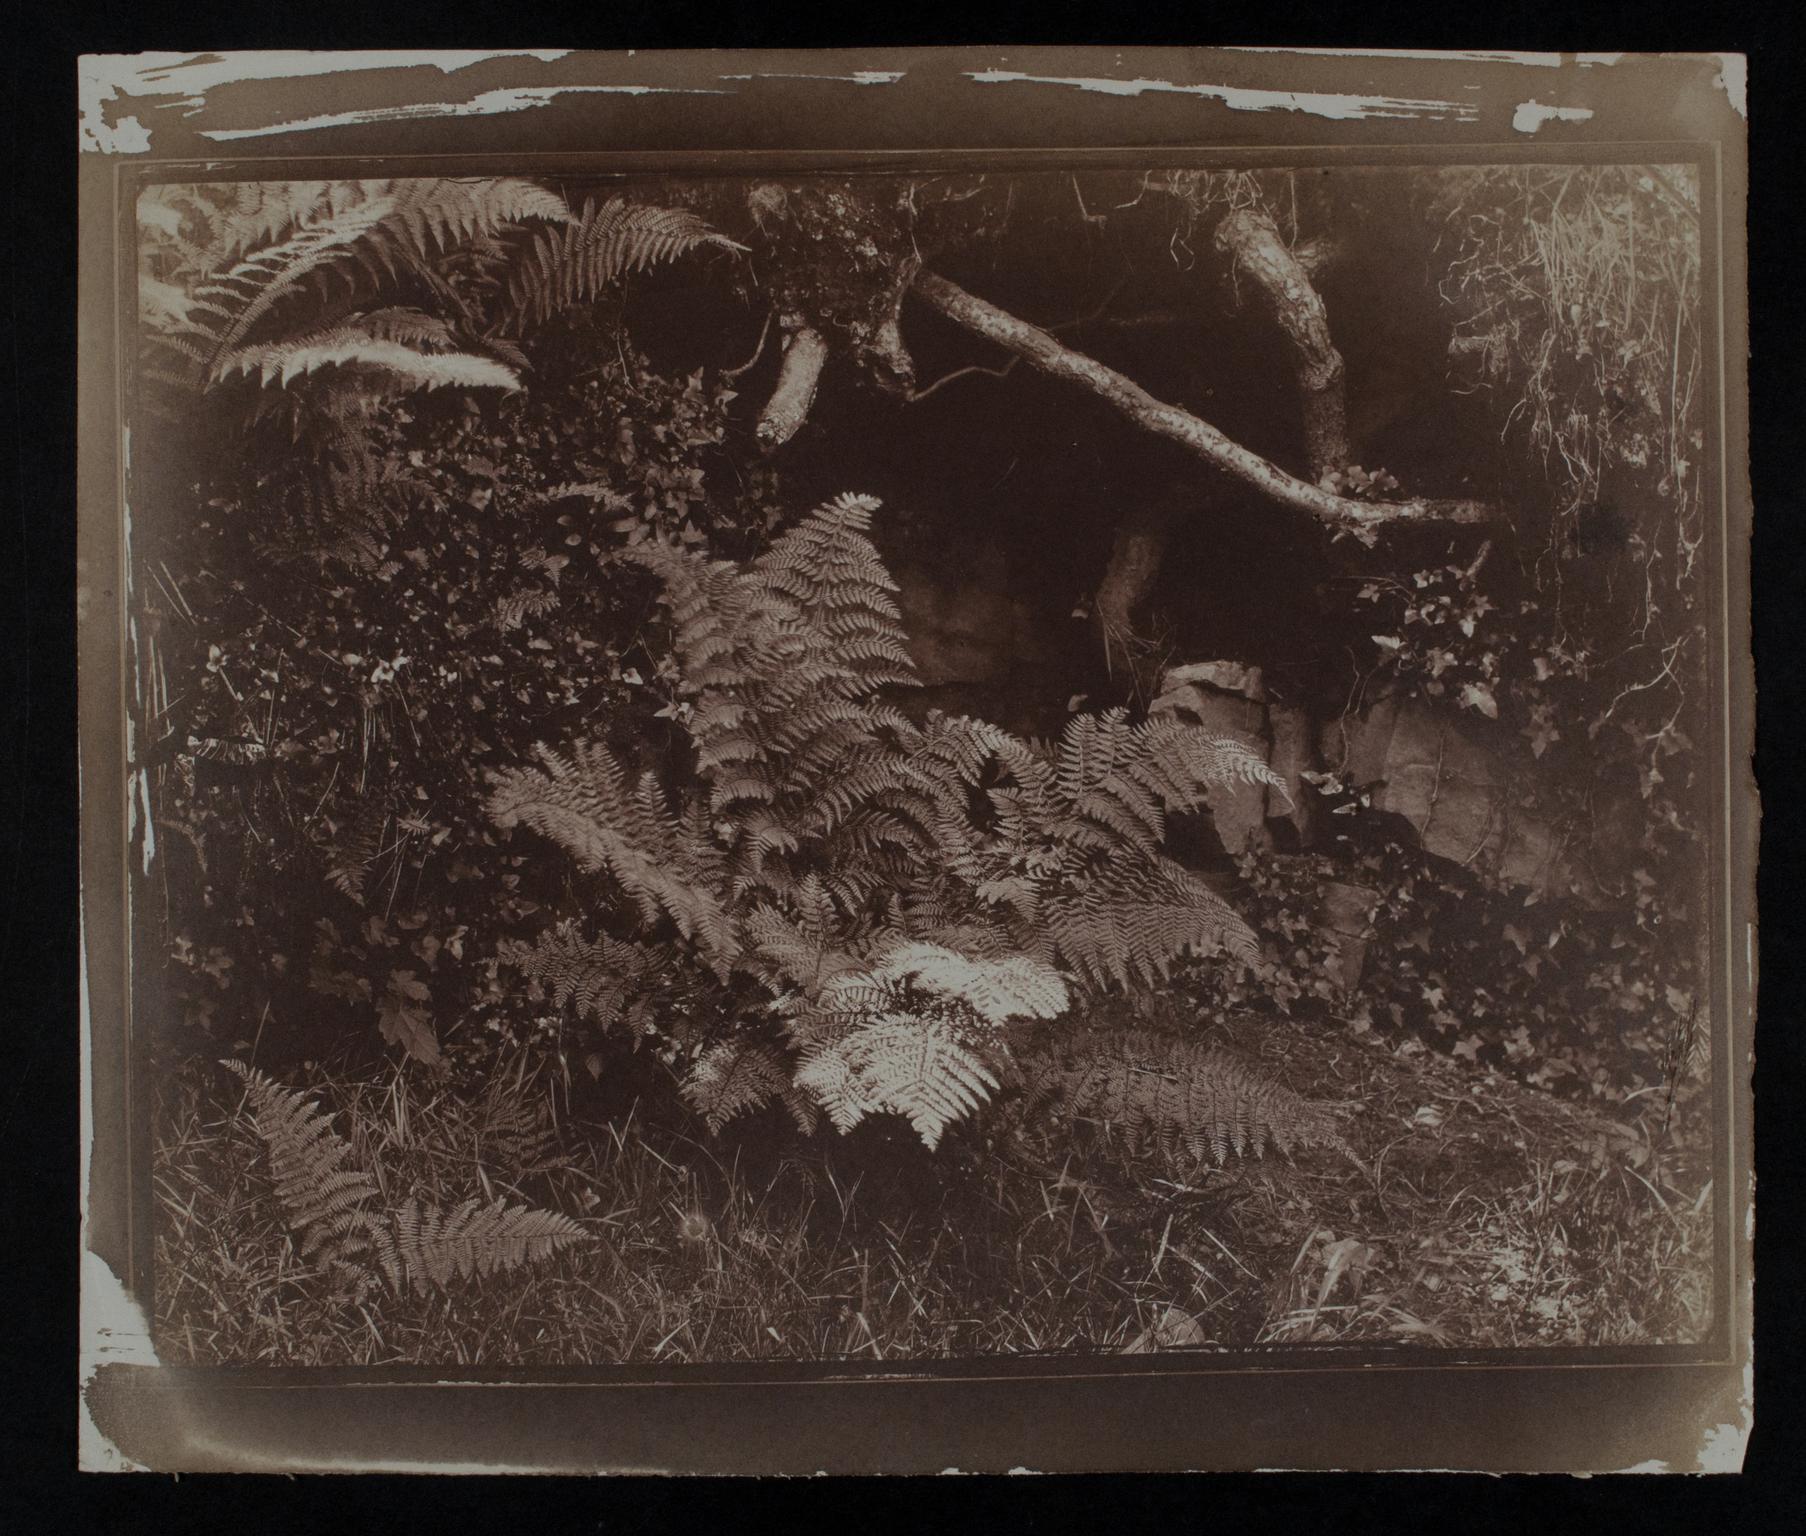 Ferns, photograph